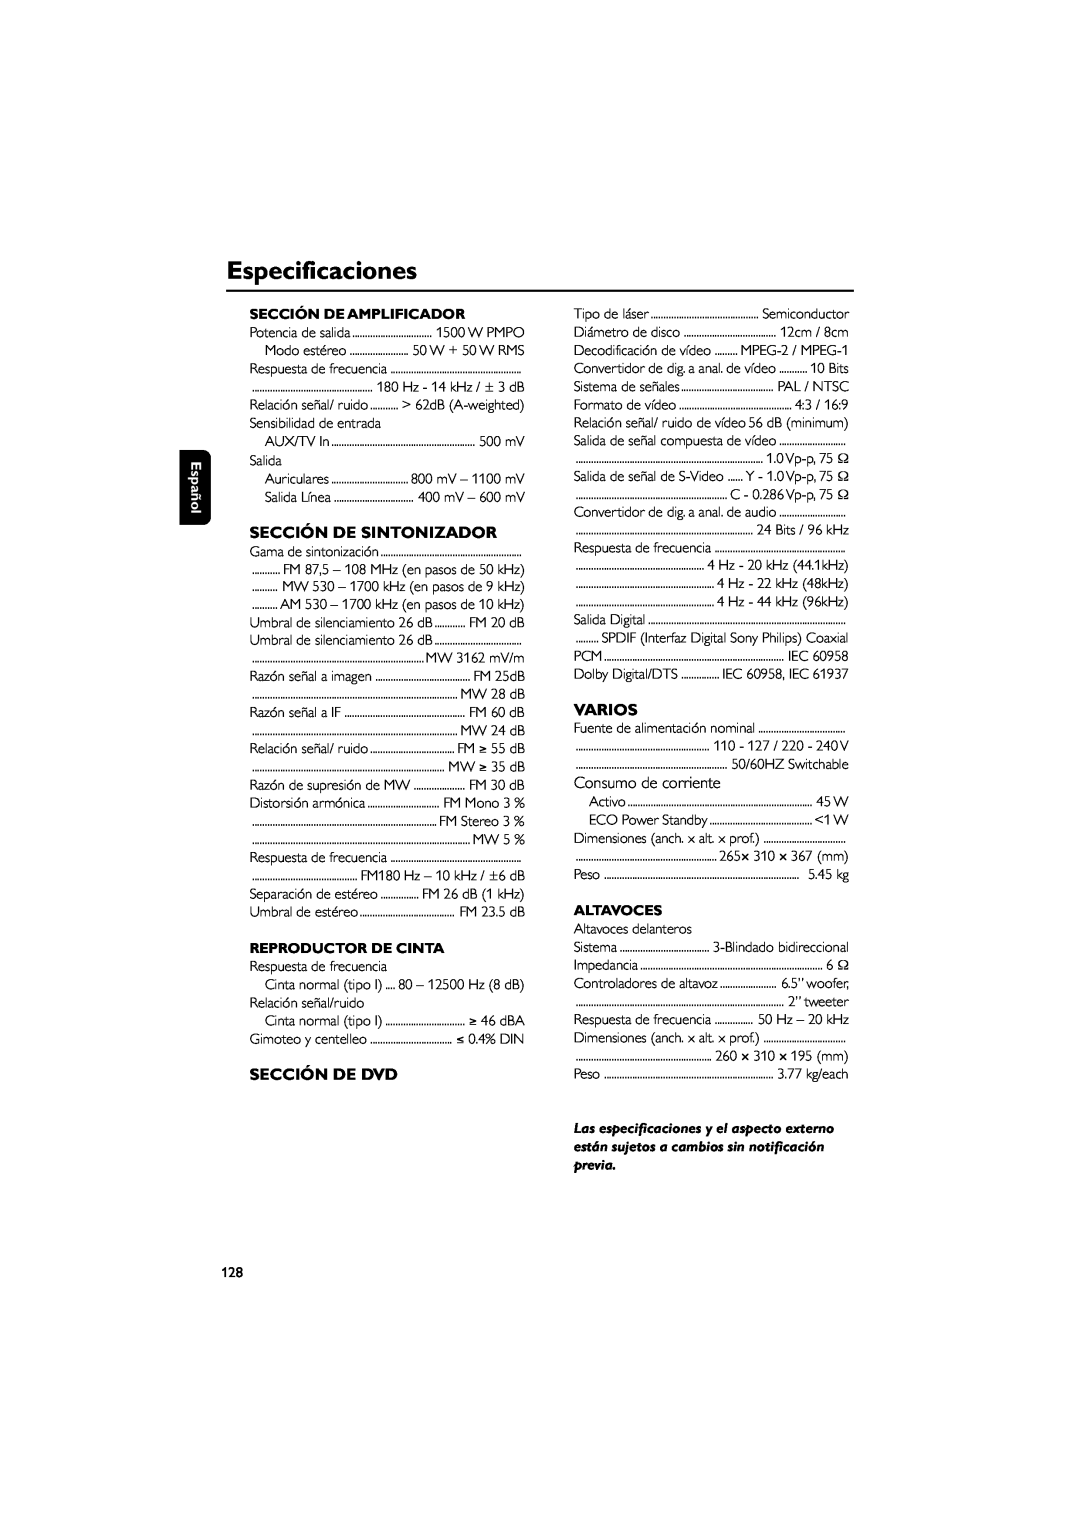 Philips FWD39 manual Especificaciones, Sección De Sintonizador, Sección De Dvd, Varios, Sección De Amplificador, Altavoces 